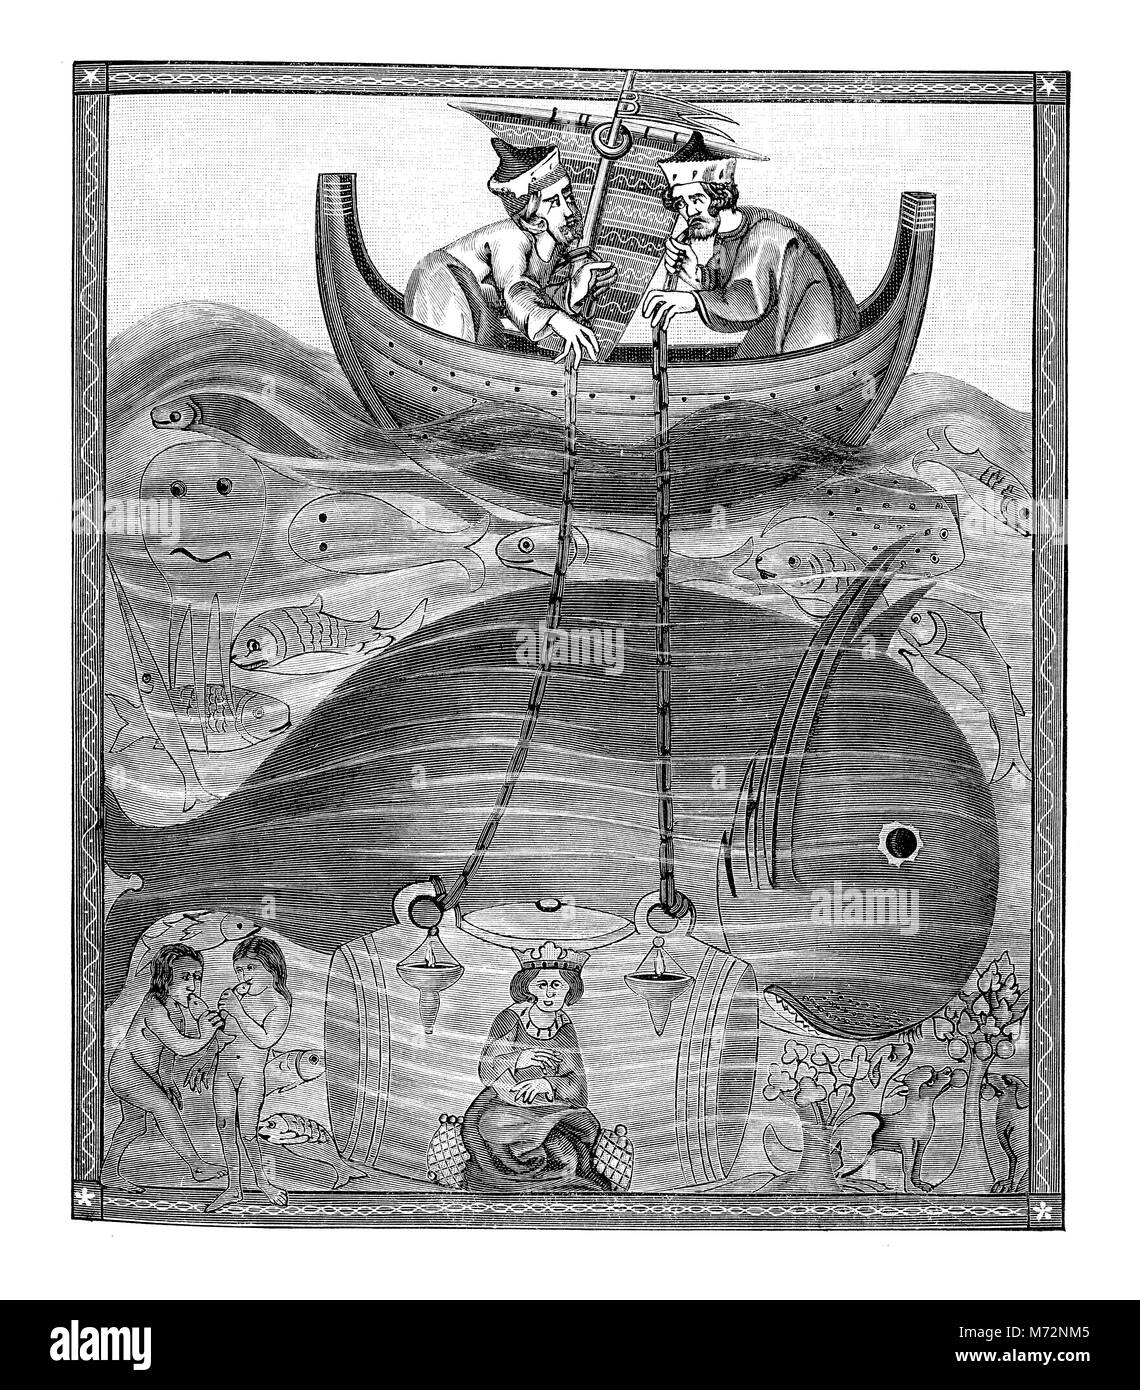 Fantastische mittelalterliche Darstellung der tiefe Gewässer, mit Mensch und Wal Unterwasser, XII Jahrhundert Abbildung Stockfoto